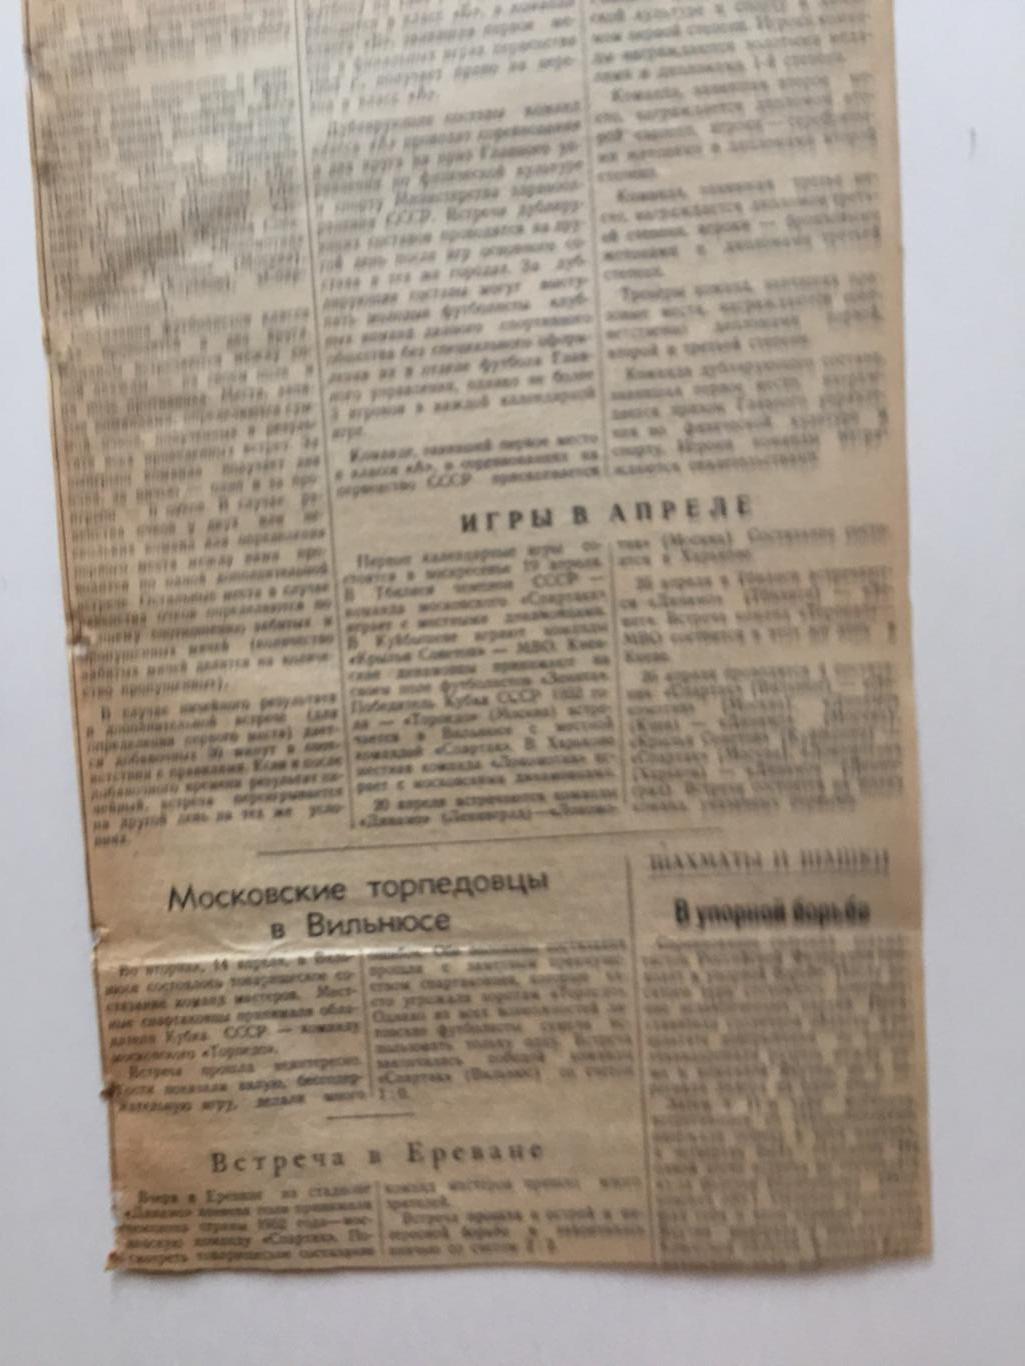 Чемпионат СССР 1953 превью сезона 1